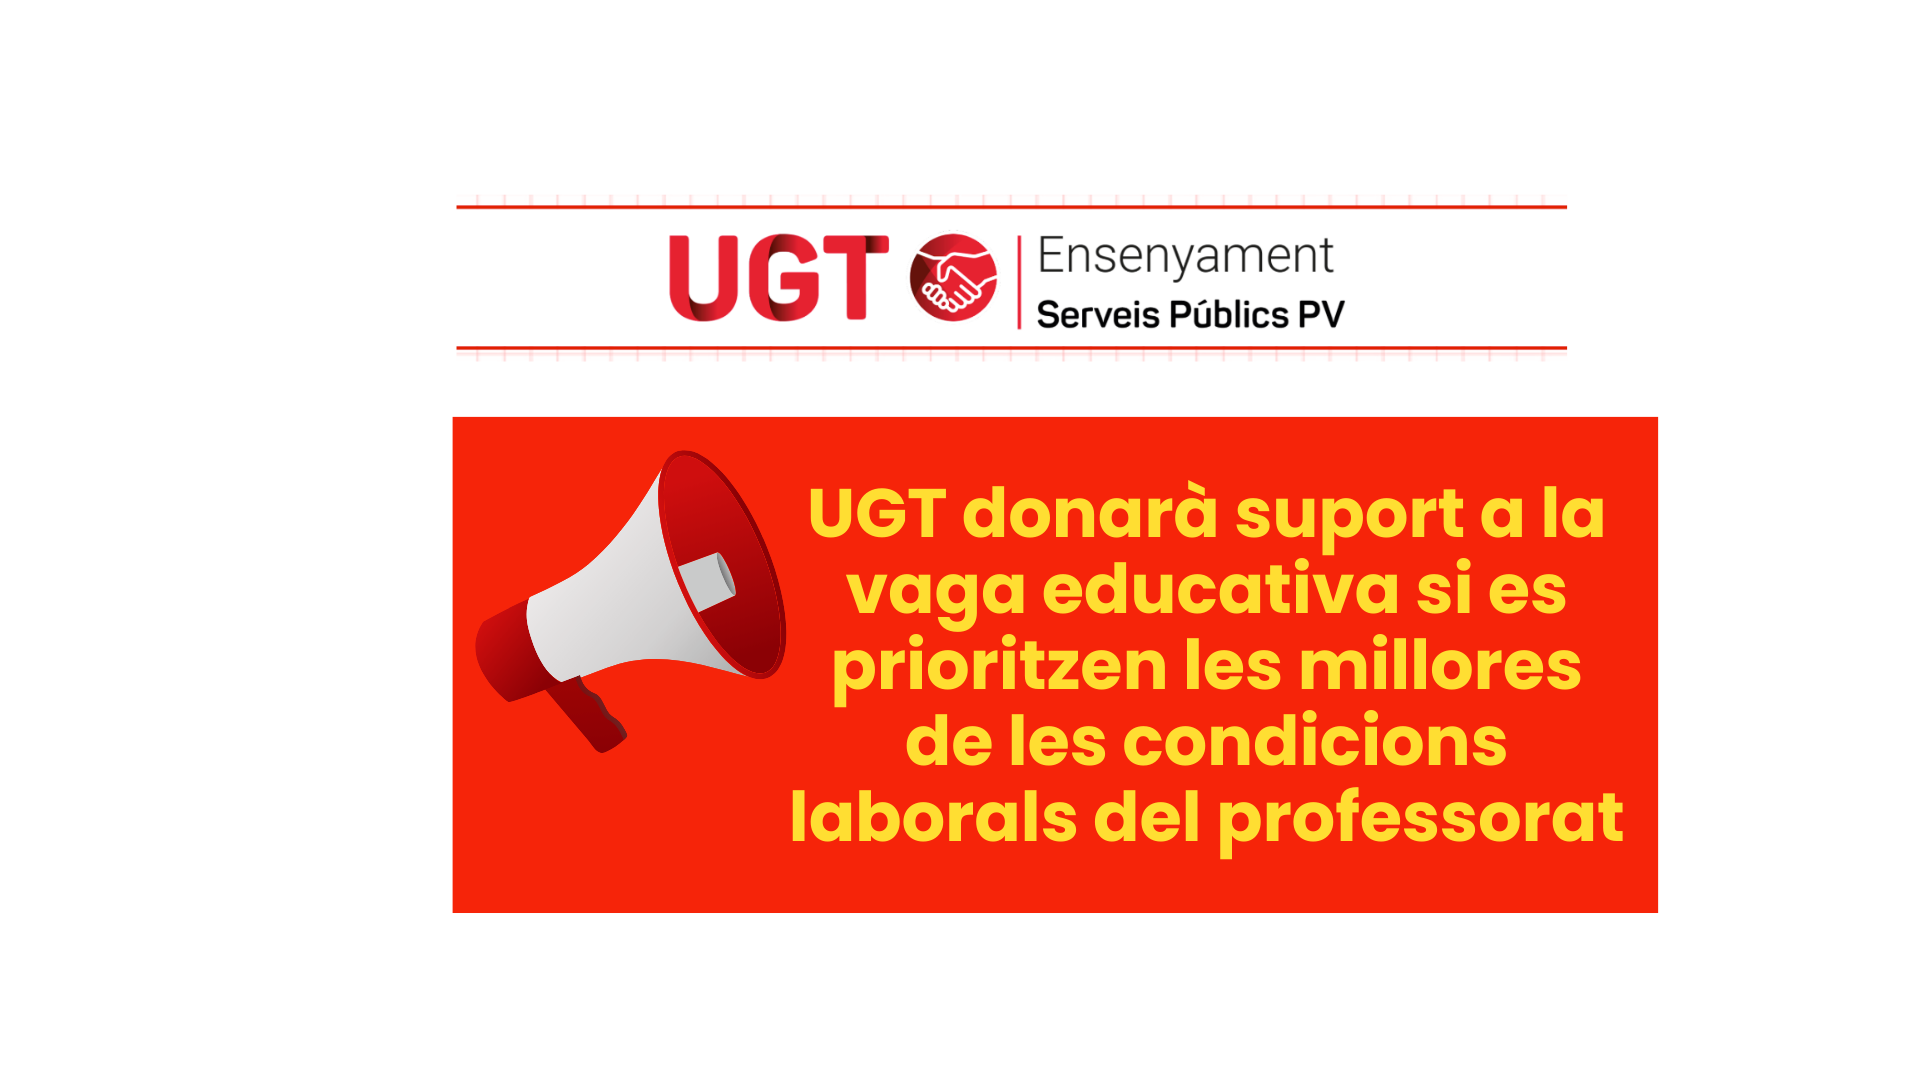 UGT donarà suport a la vaga educativa si es prioritzen les millores de les condicions laborals del professorat